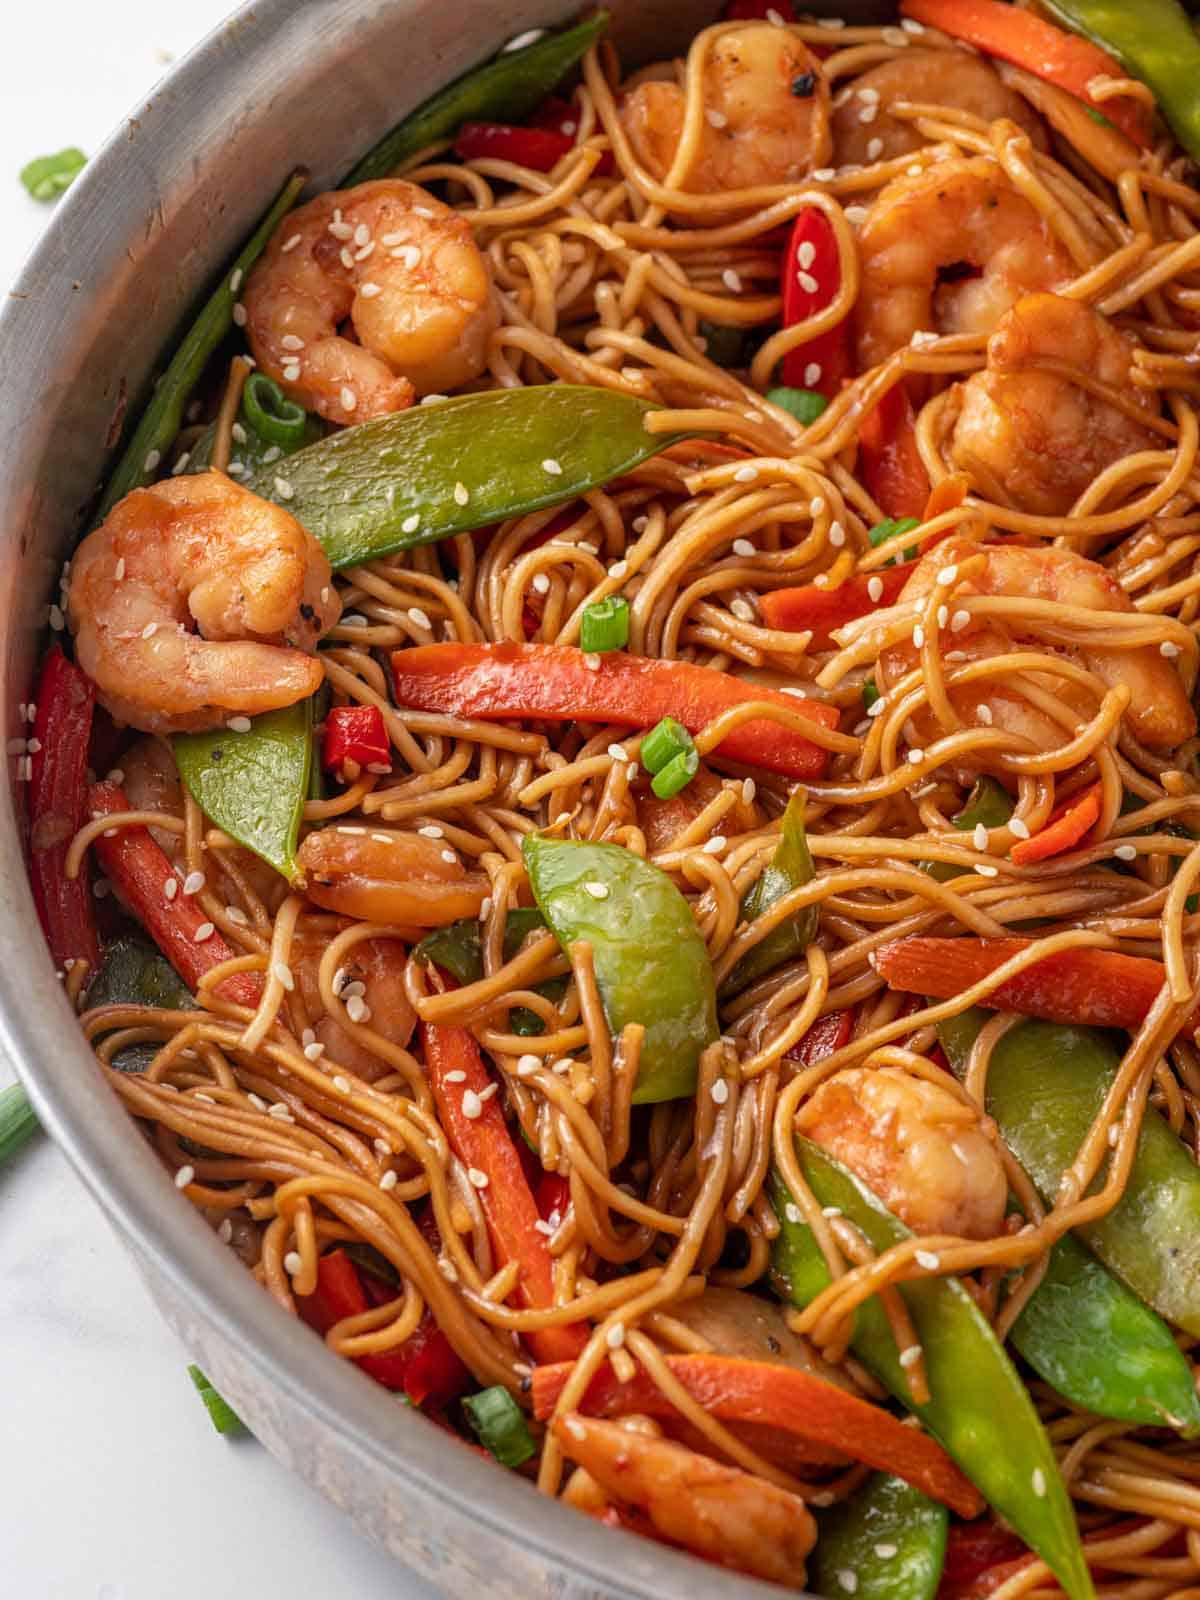 A skillet of shrimp noodles with vegetables.